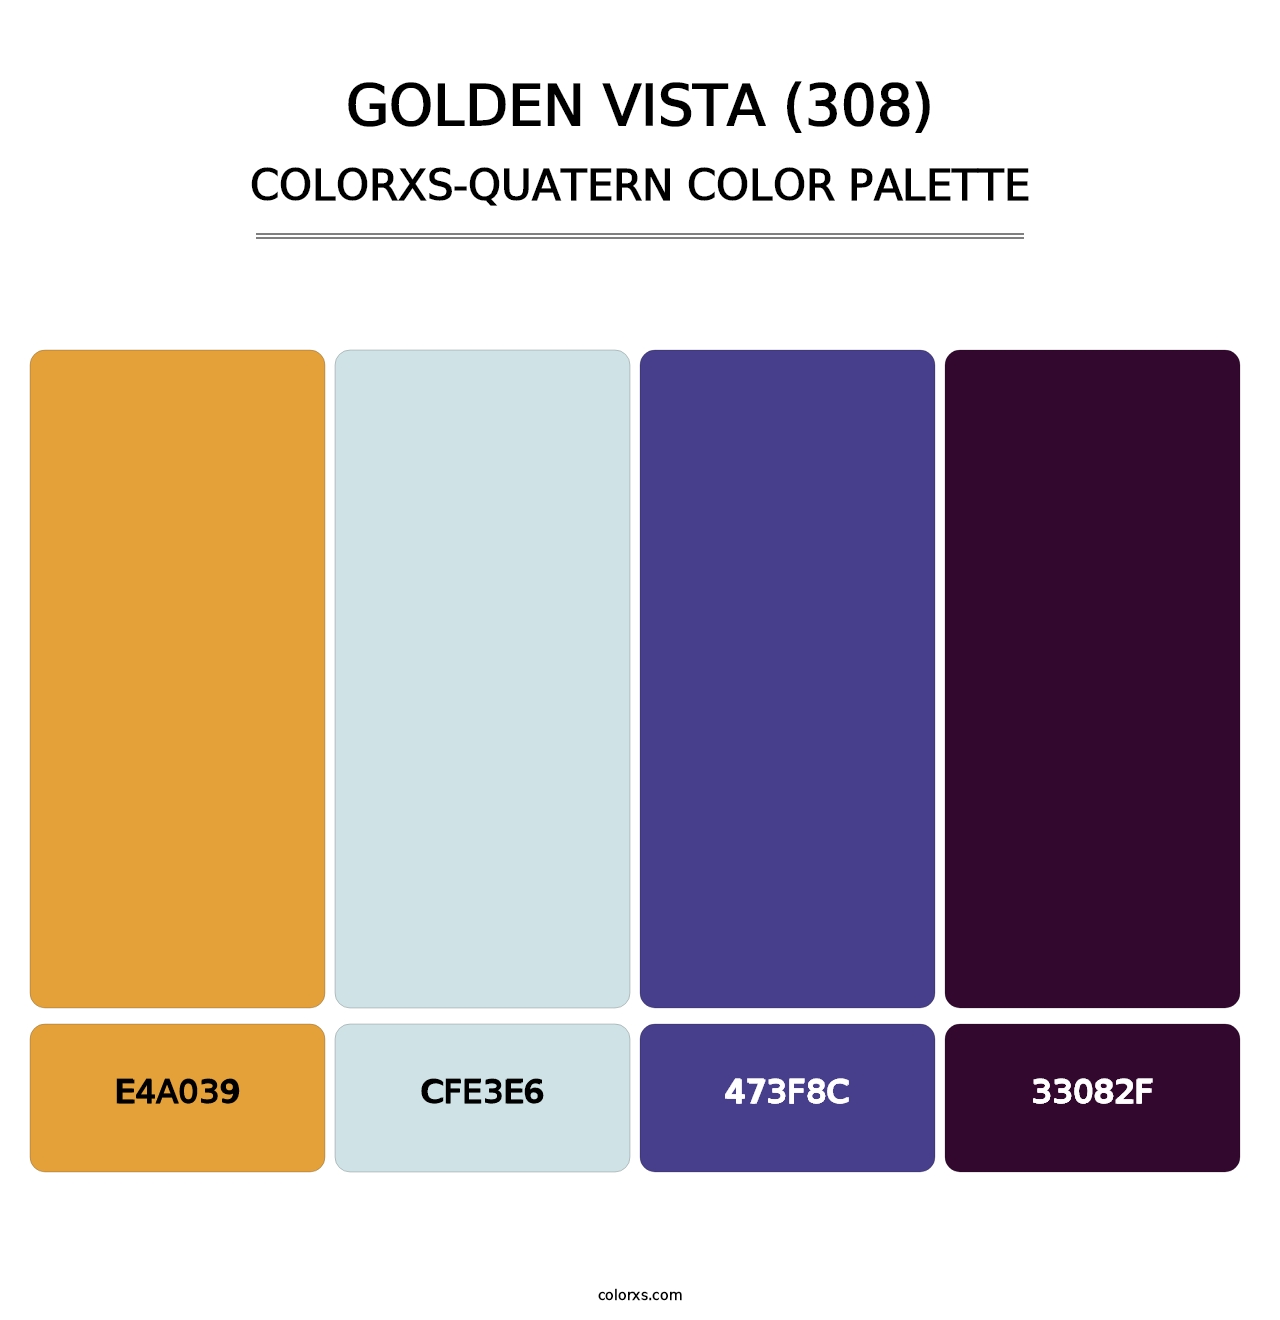 Golden Vista (308) - Colorxs Quatern Palette